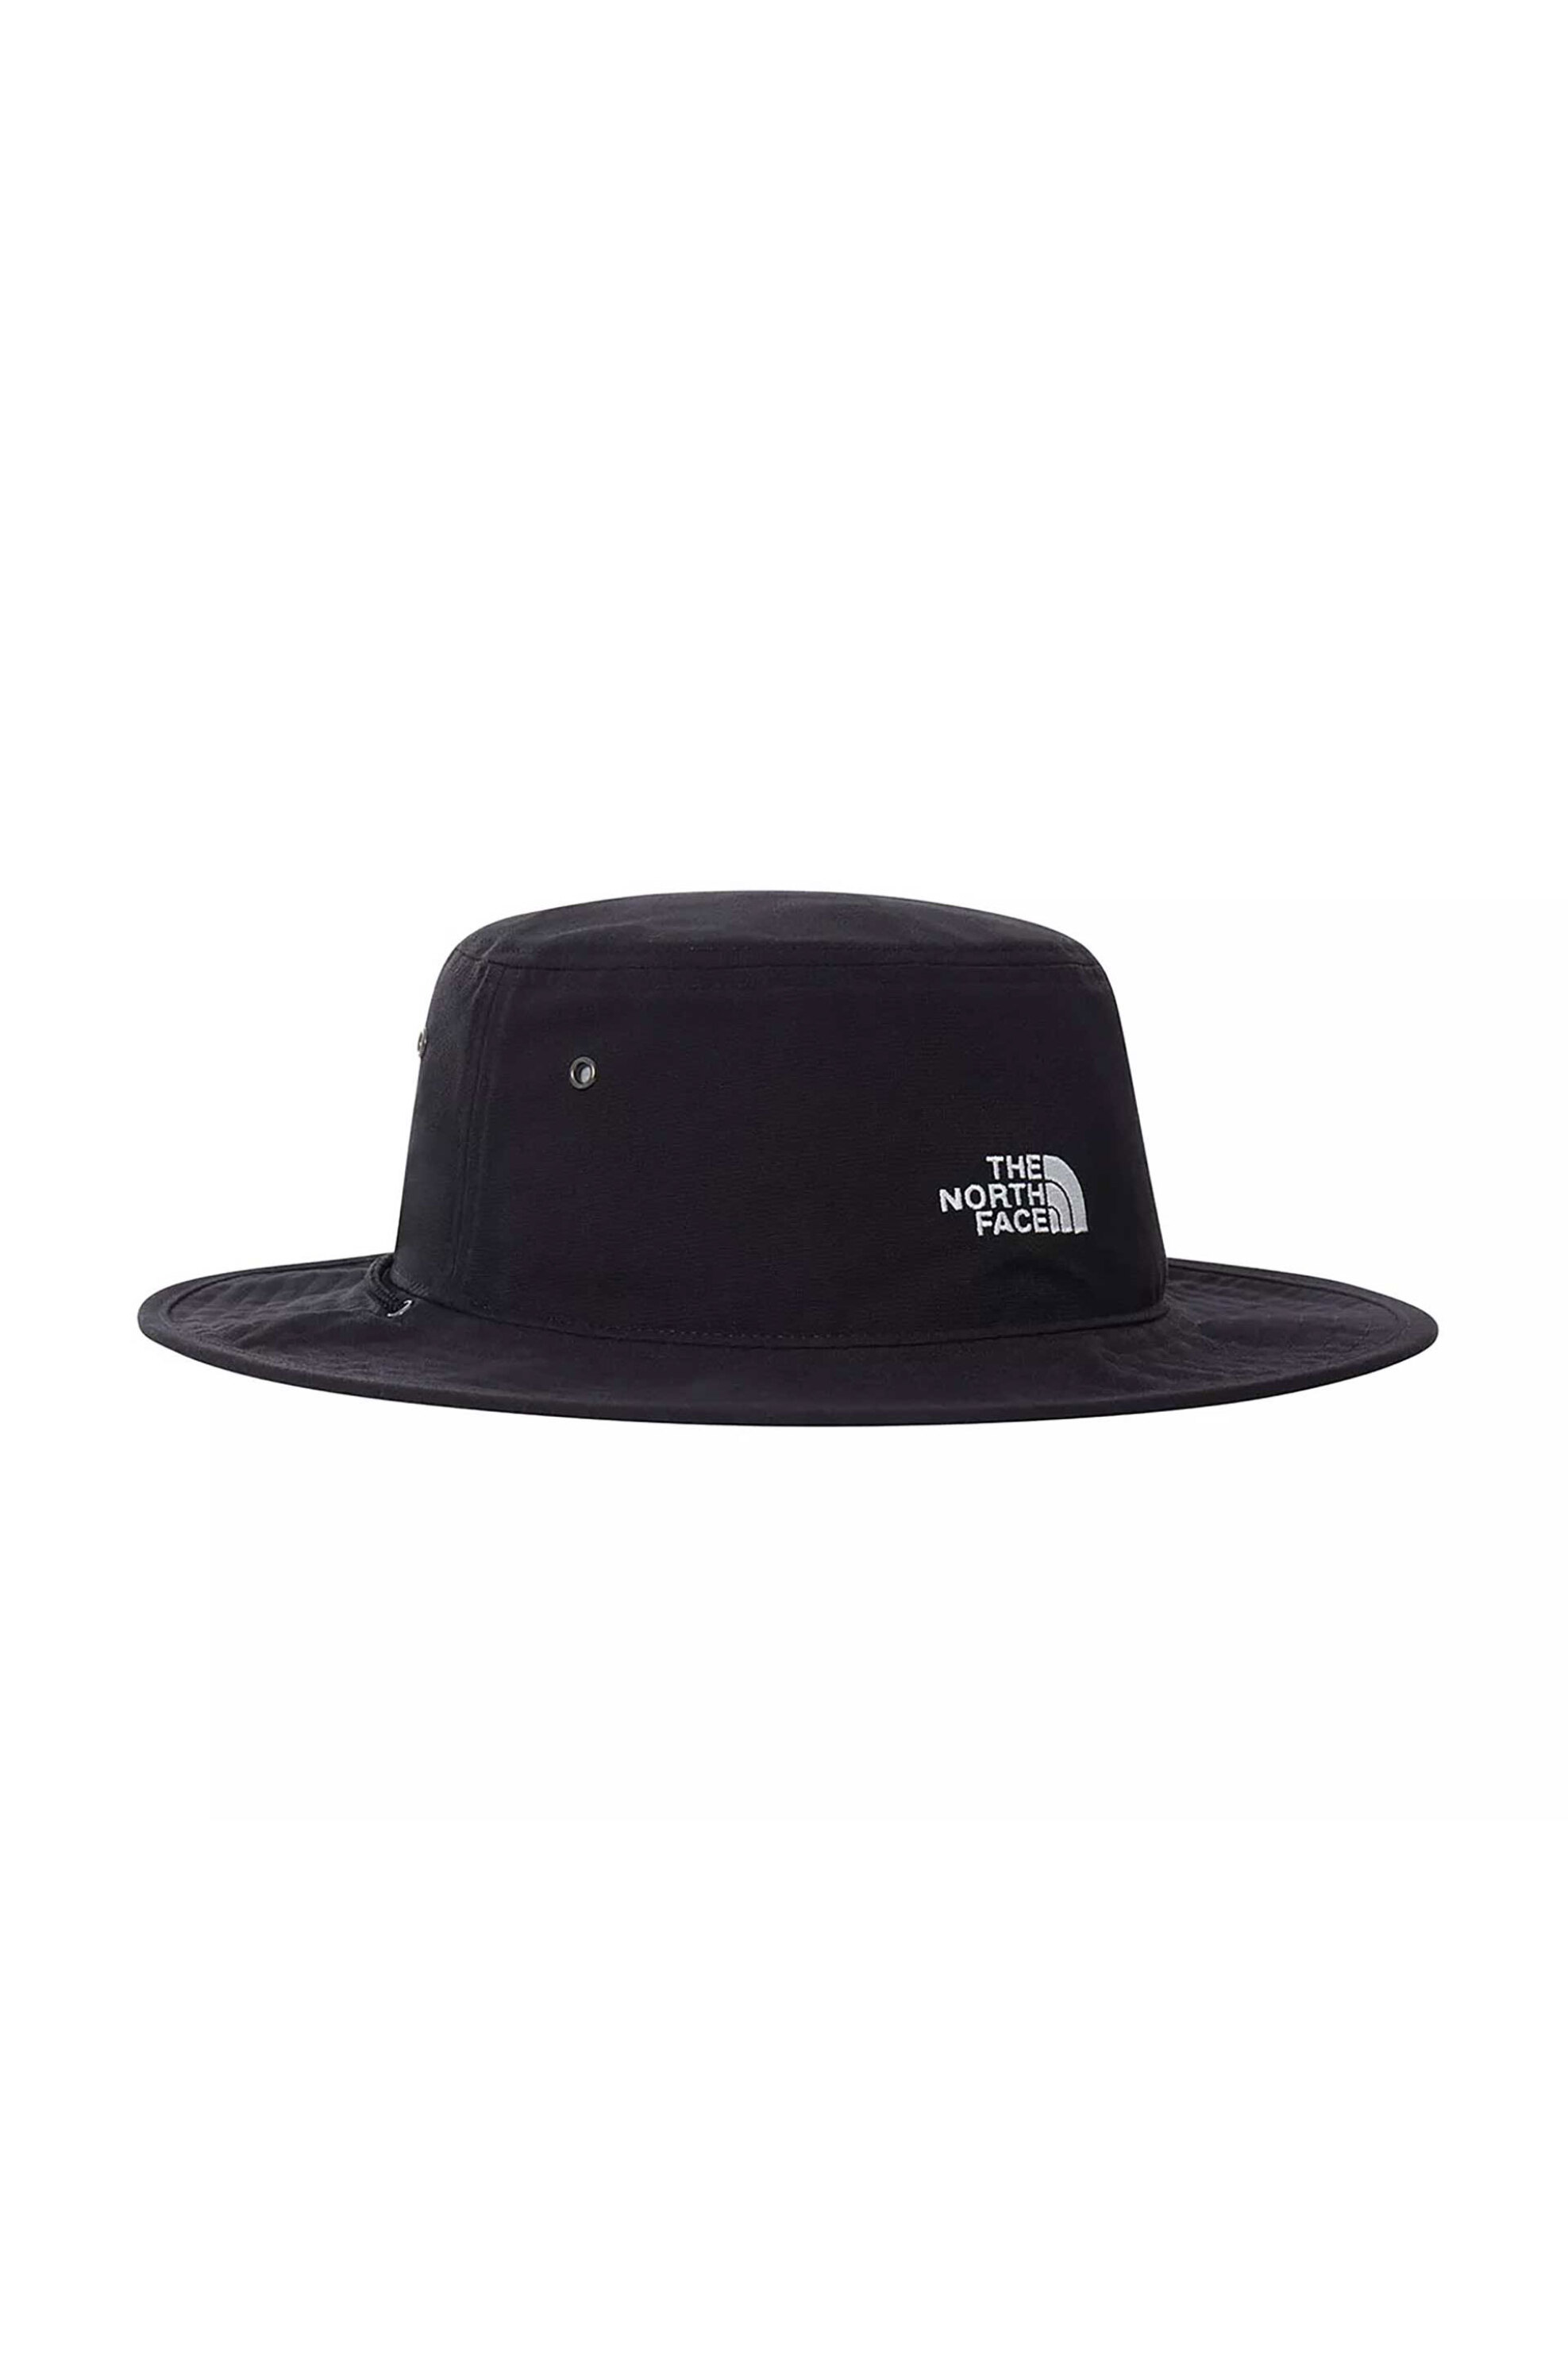 Ανδρική Μόδα > Ανδρικά Αξεσουάρ > Ανδρικά Καπέλα & Σκούφοι The North Face unisex καπέλο με κεντημένο λογότυπο "66 Brimmer" - NF0A5FX3JK31 Μαύρο